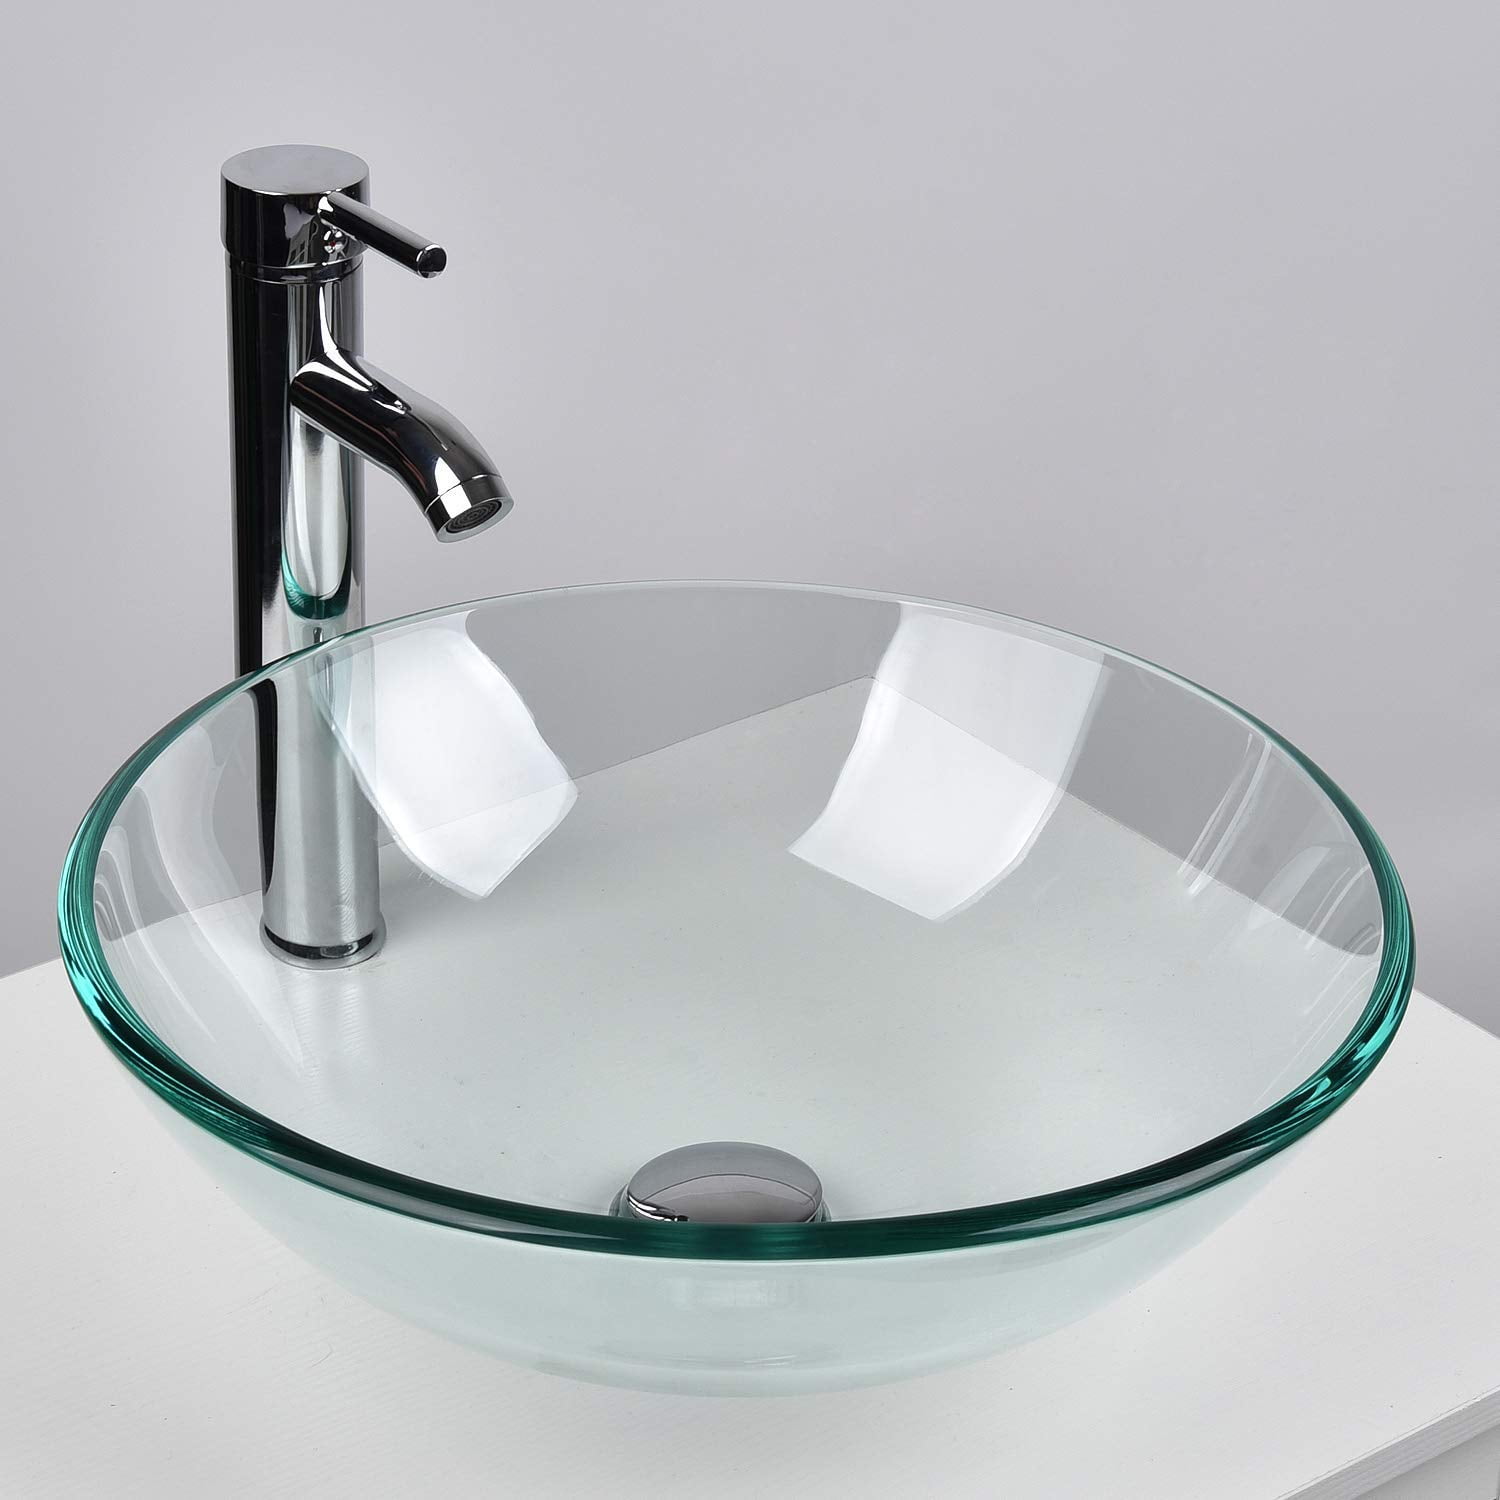 Set Of 2 Bathroom Vessel Sink Tempered Glass Round Vanity Basin Bowl Faucet Set